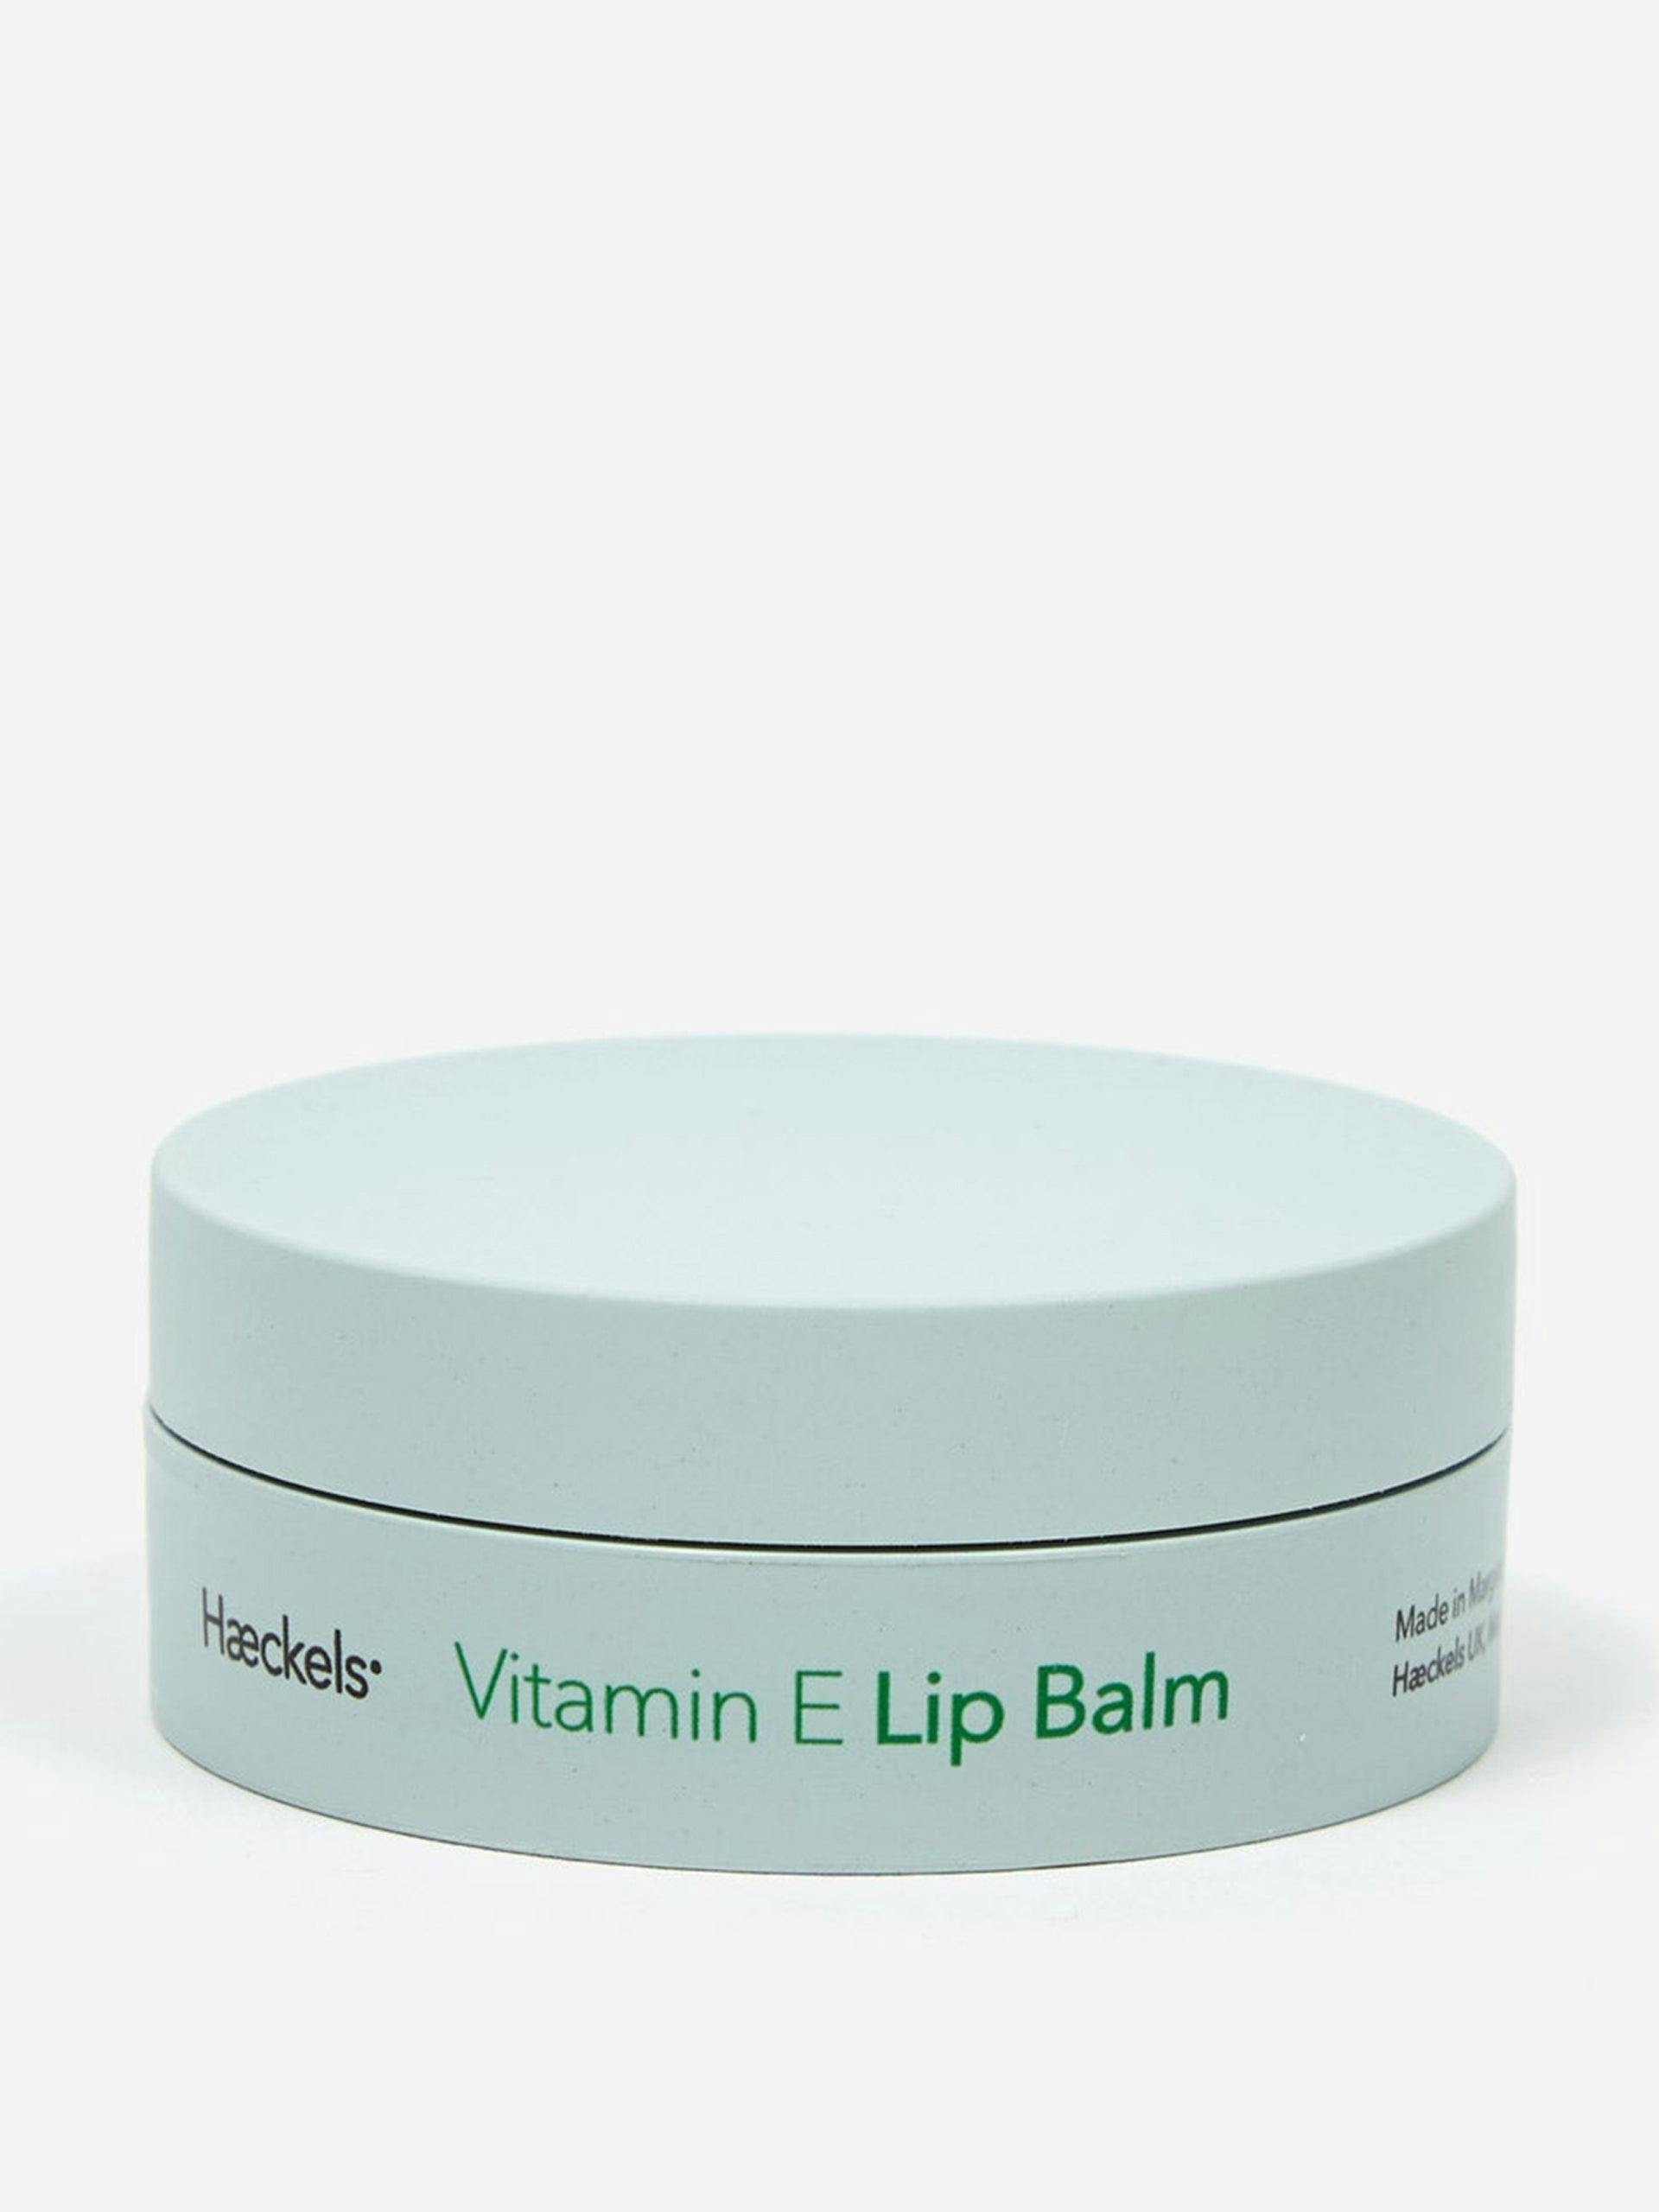 Vitamin E lip balm